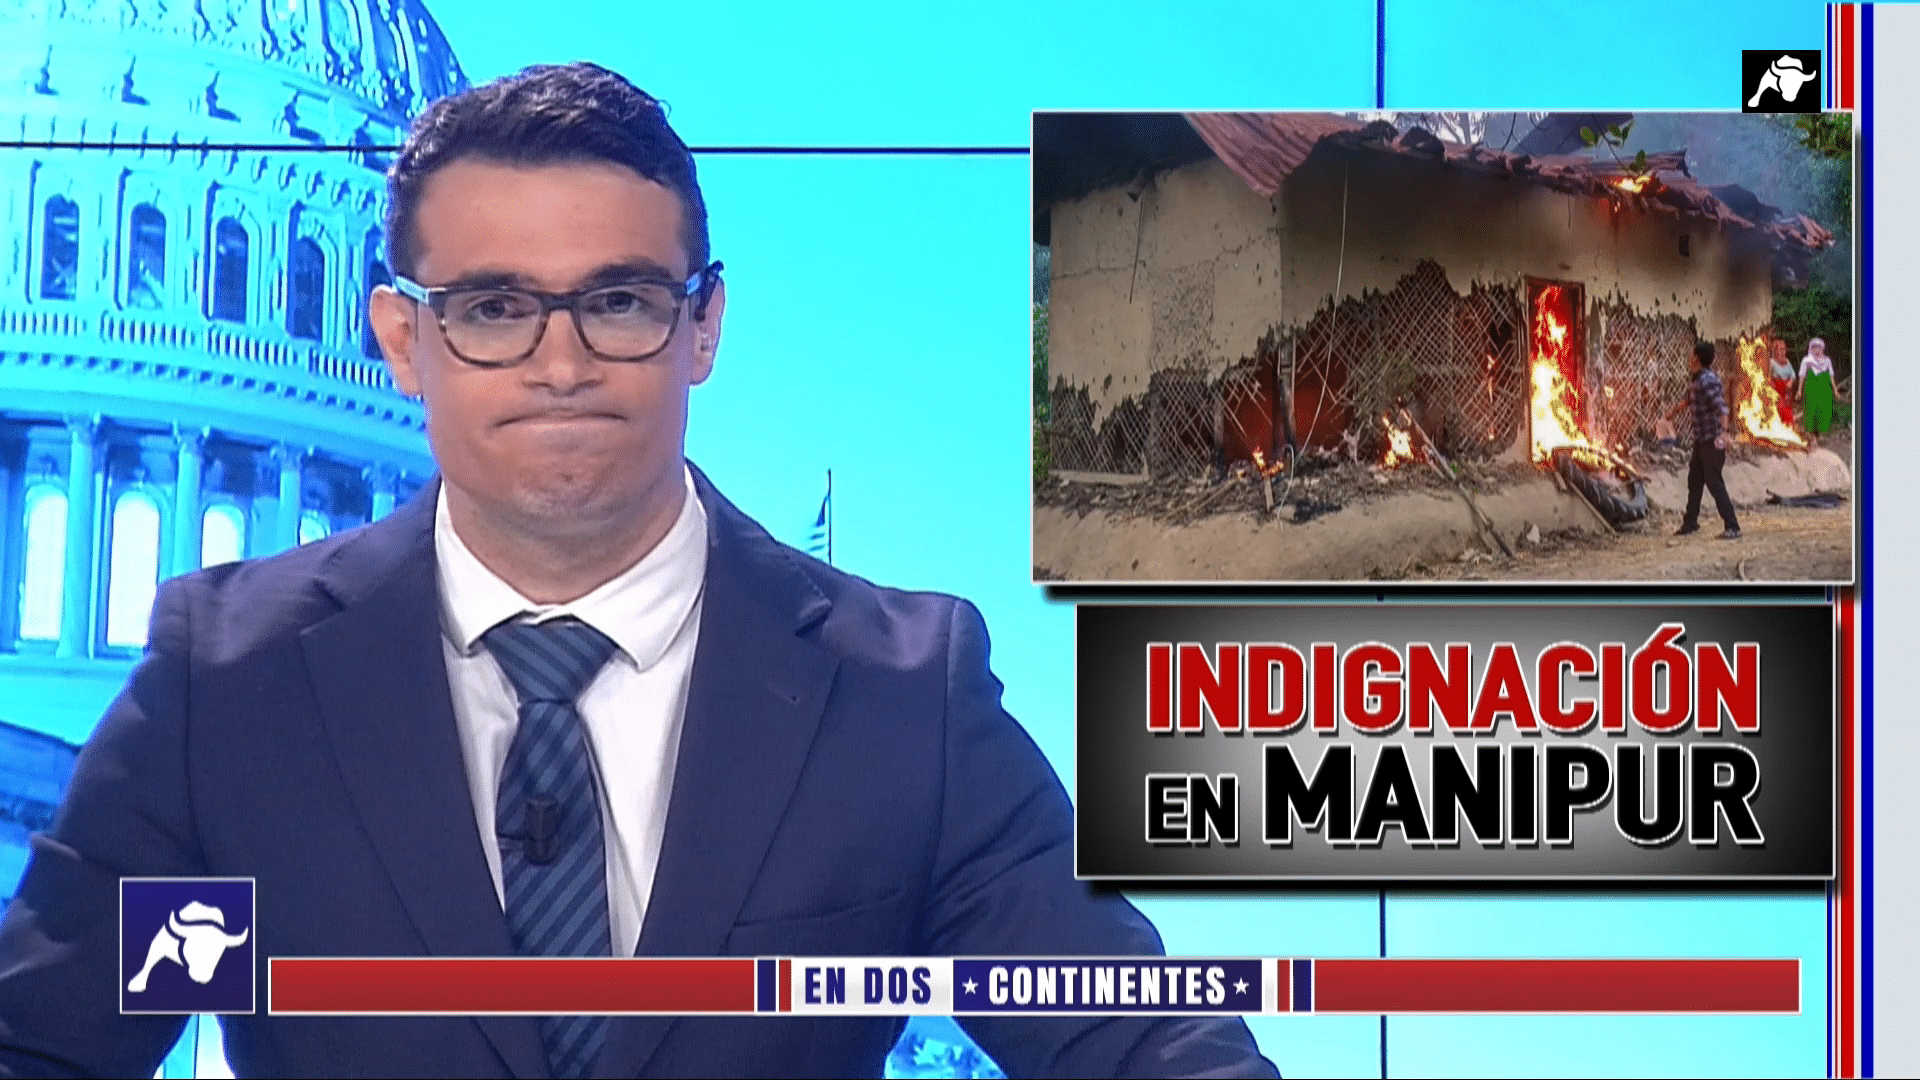 El escándalo que ha sacudido a la India: La tragedia de Manipur